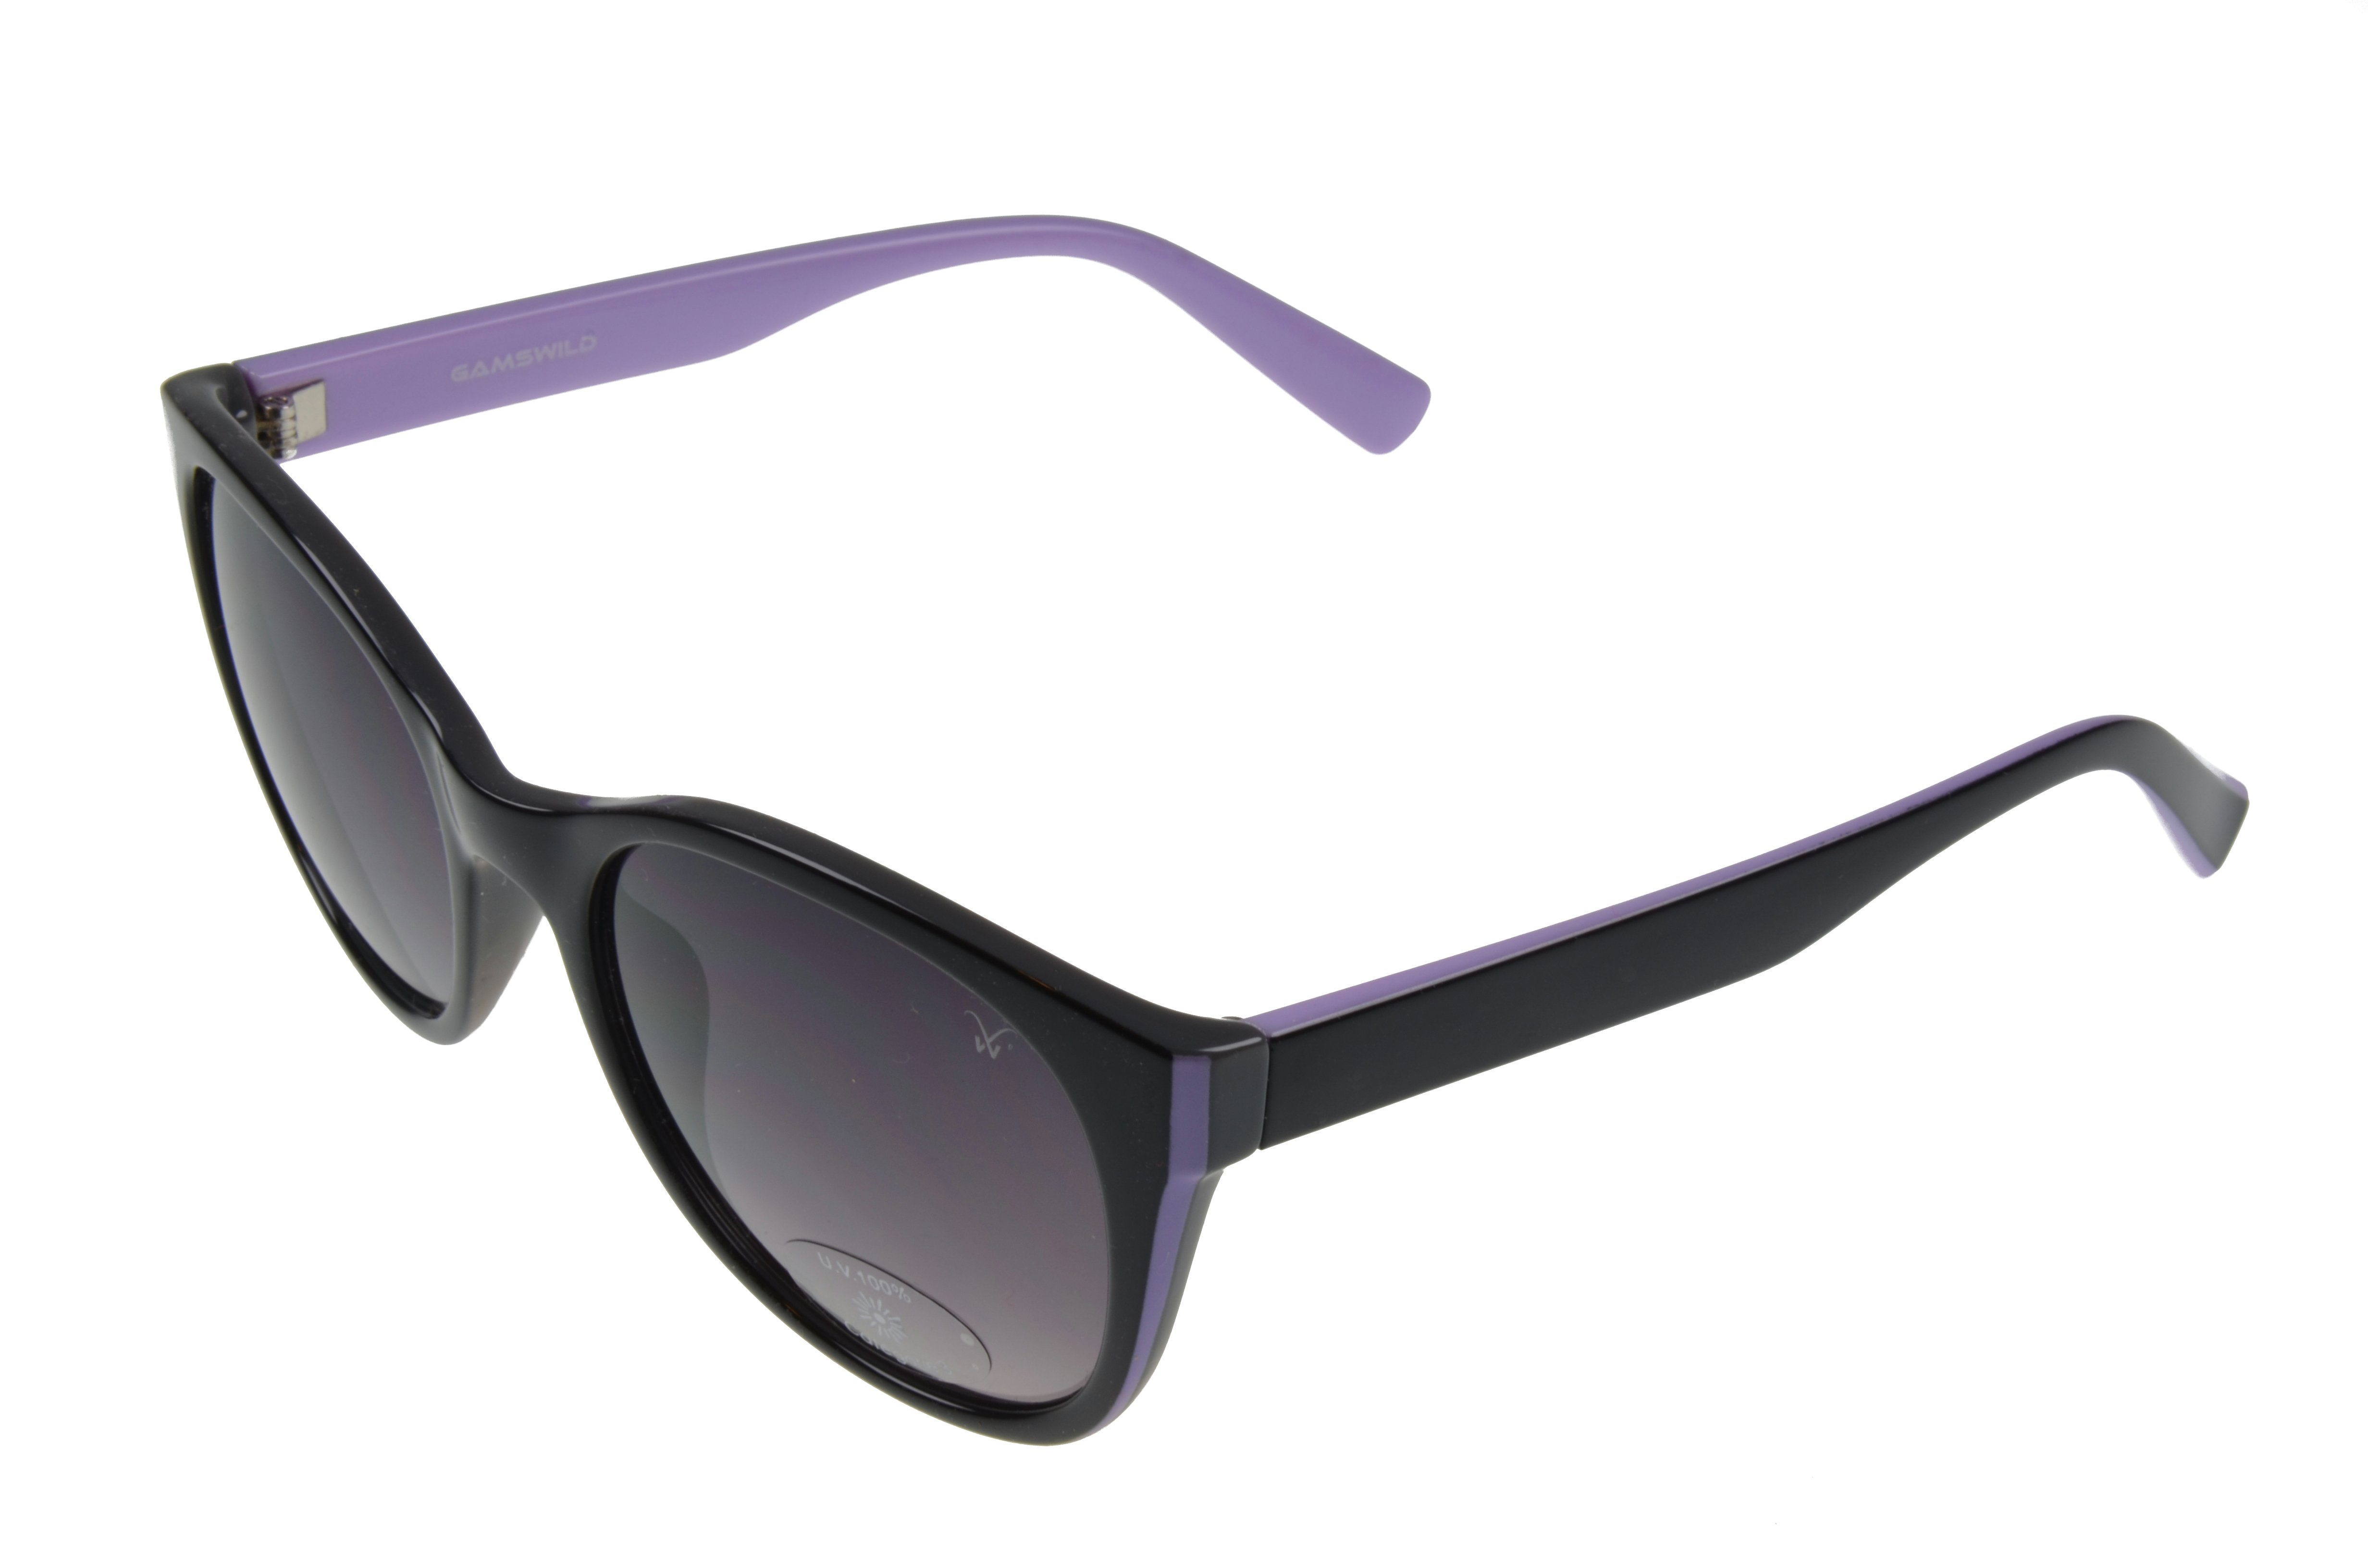 Gamswild Sonnenbrille »WM7027 GAMSSTYLE Mode Brille Damen Herren Unisex,  schwarz - beige, schwarz - lila« Cat-Eye online kaufen | OTTO